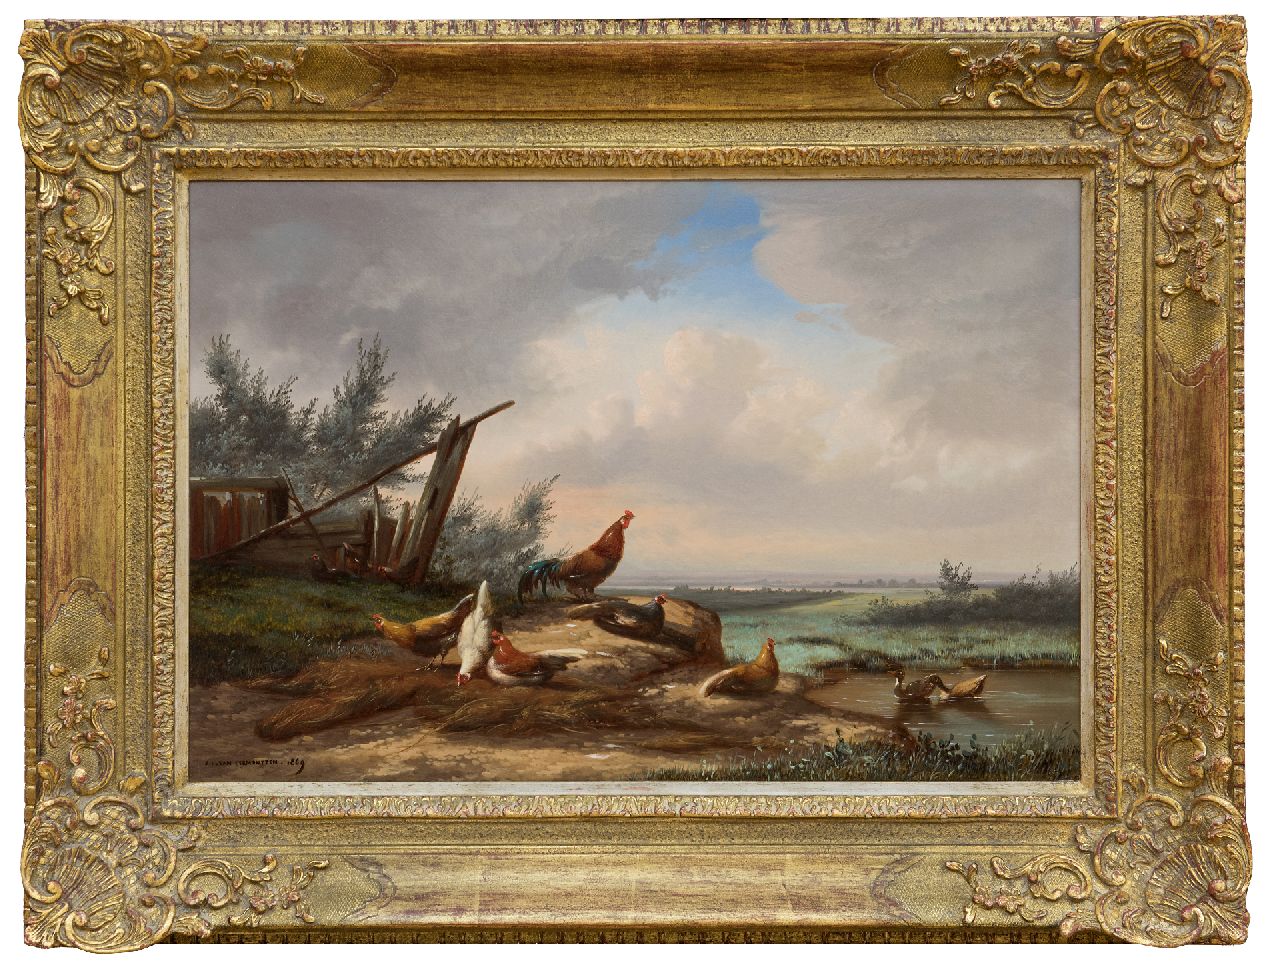 Leemputten J.L. van | Jean-Baptiste Leopold van Leemputten | Schilderijen te koop aangeboden | Haan en kippen bij een hek, olieverf op paneel 33,0 x 48,2 cm, gesigneerd linksonder en gedateerd 1869